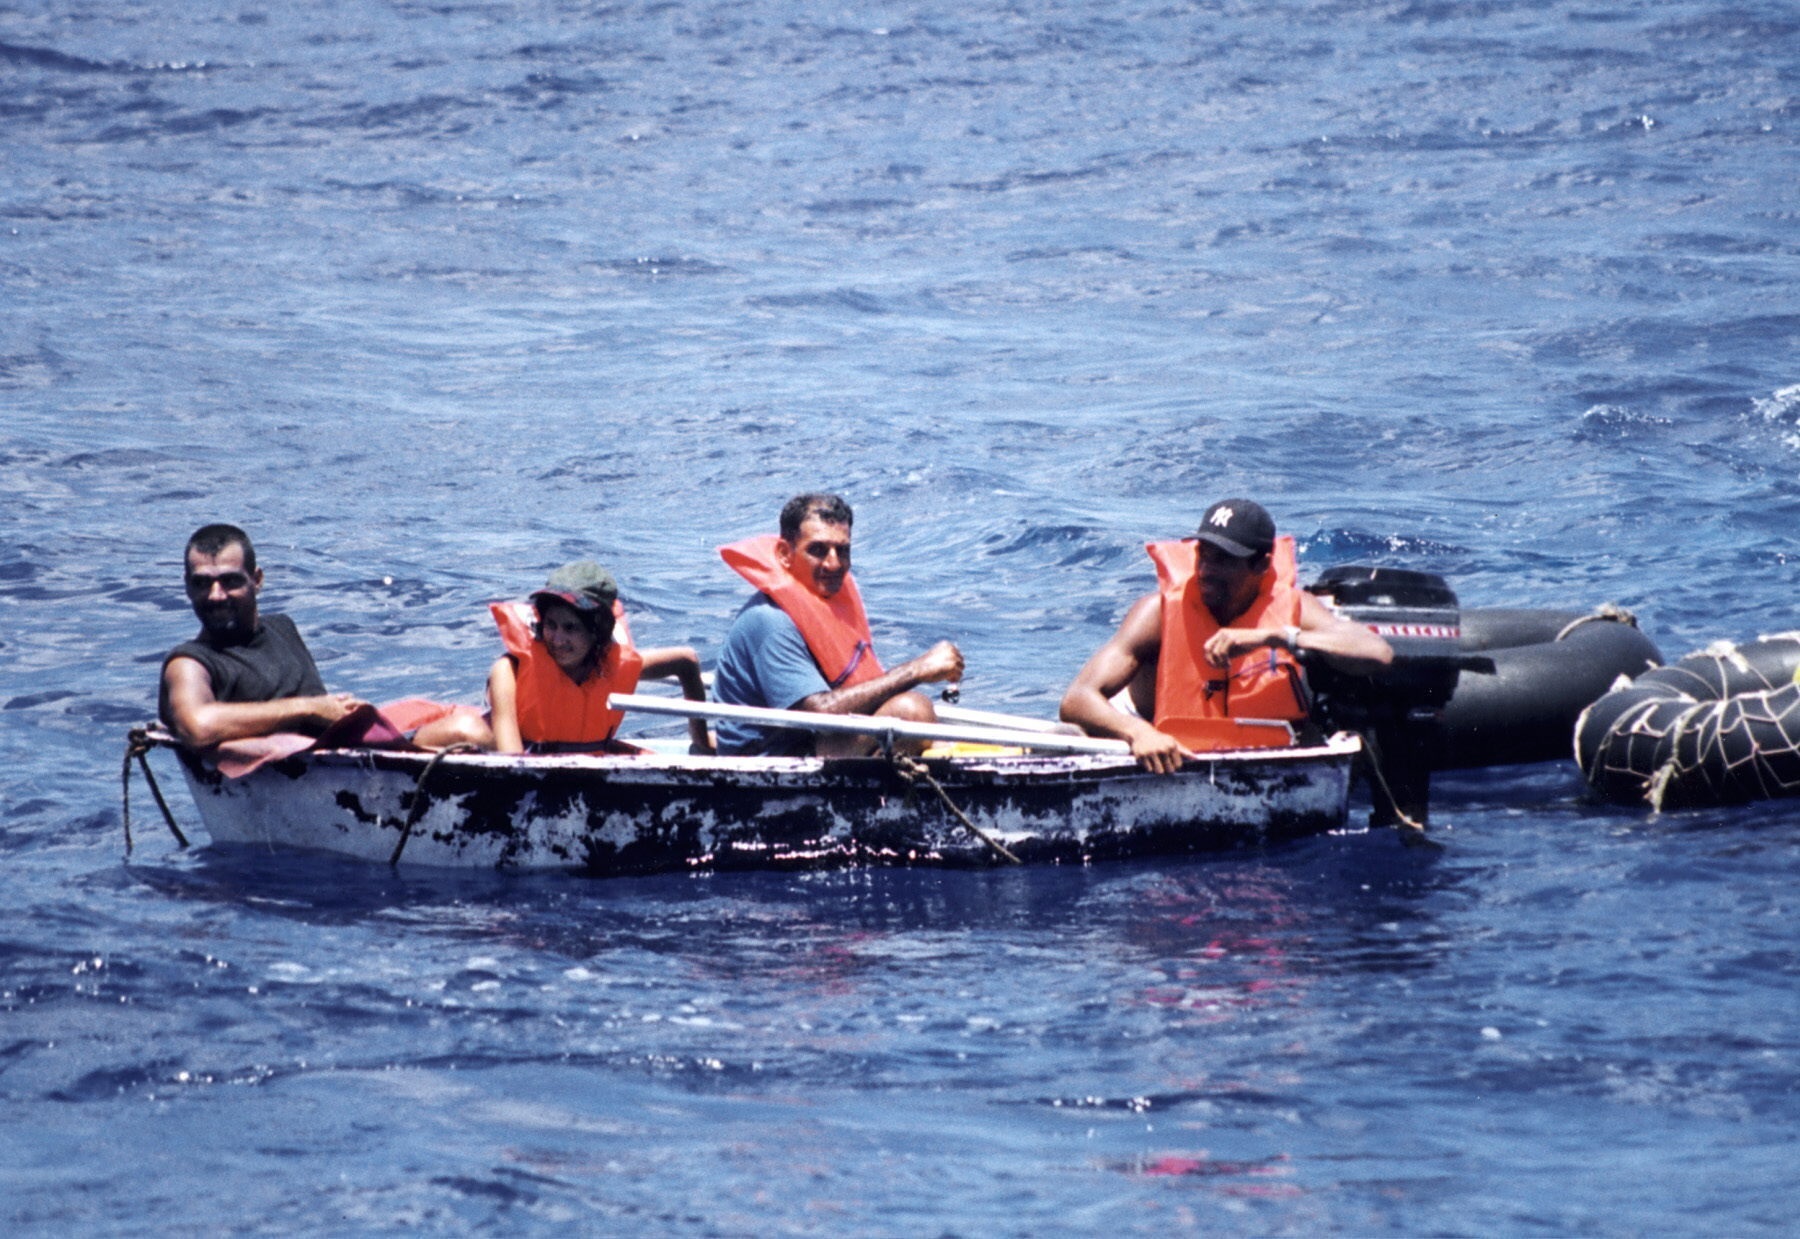 Foto de archivo de un grupo de inmigrantes cubanos llegando a las costas de Florida en un bote (EFE/Archivo)
